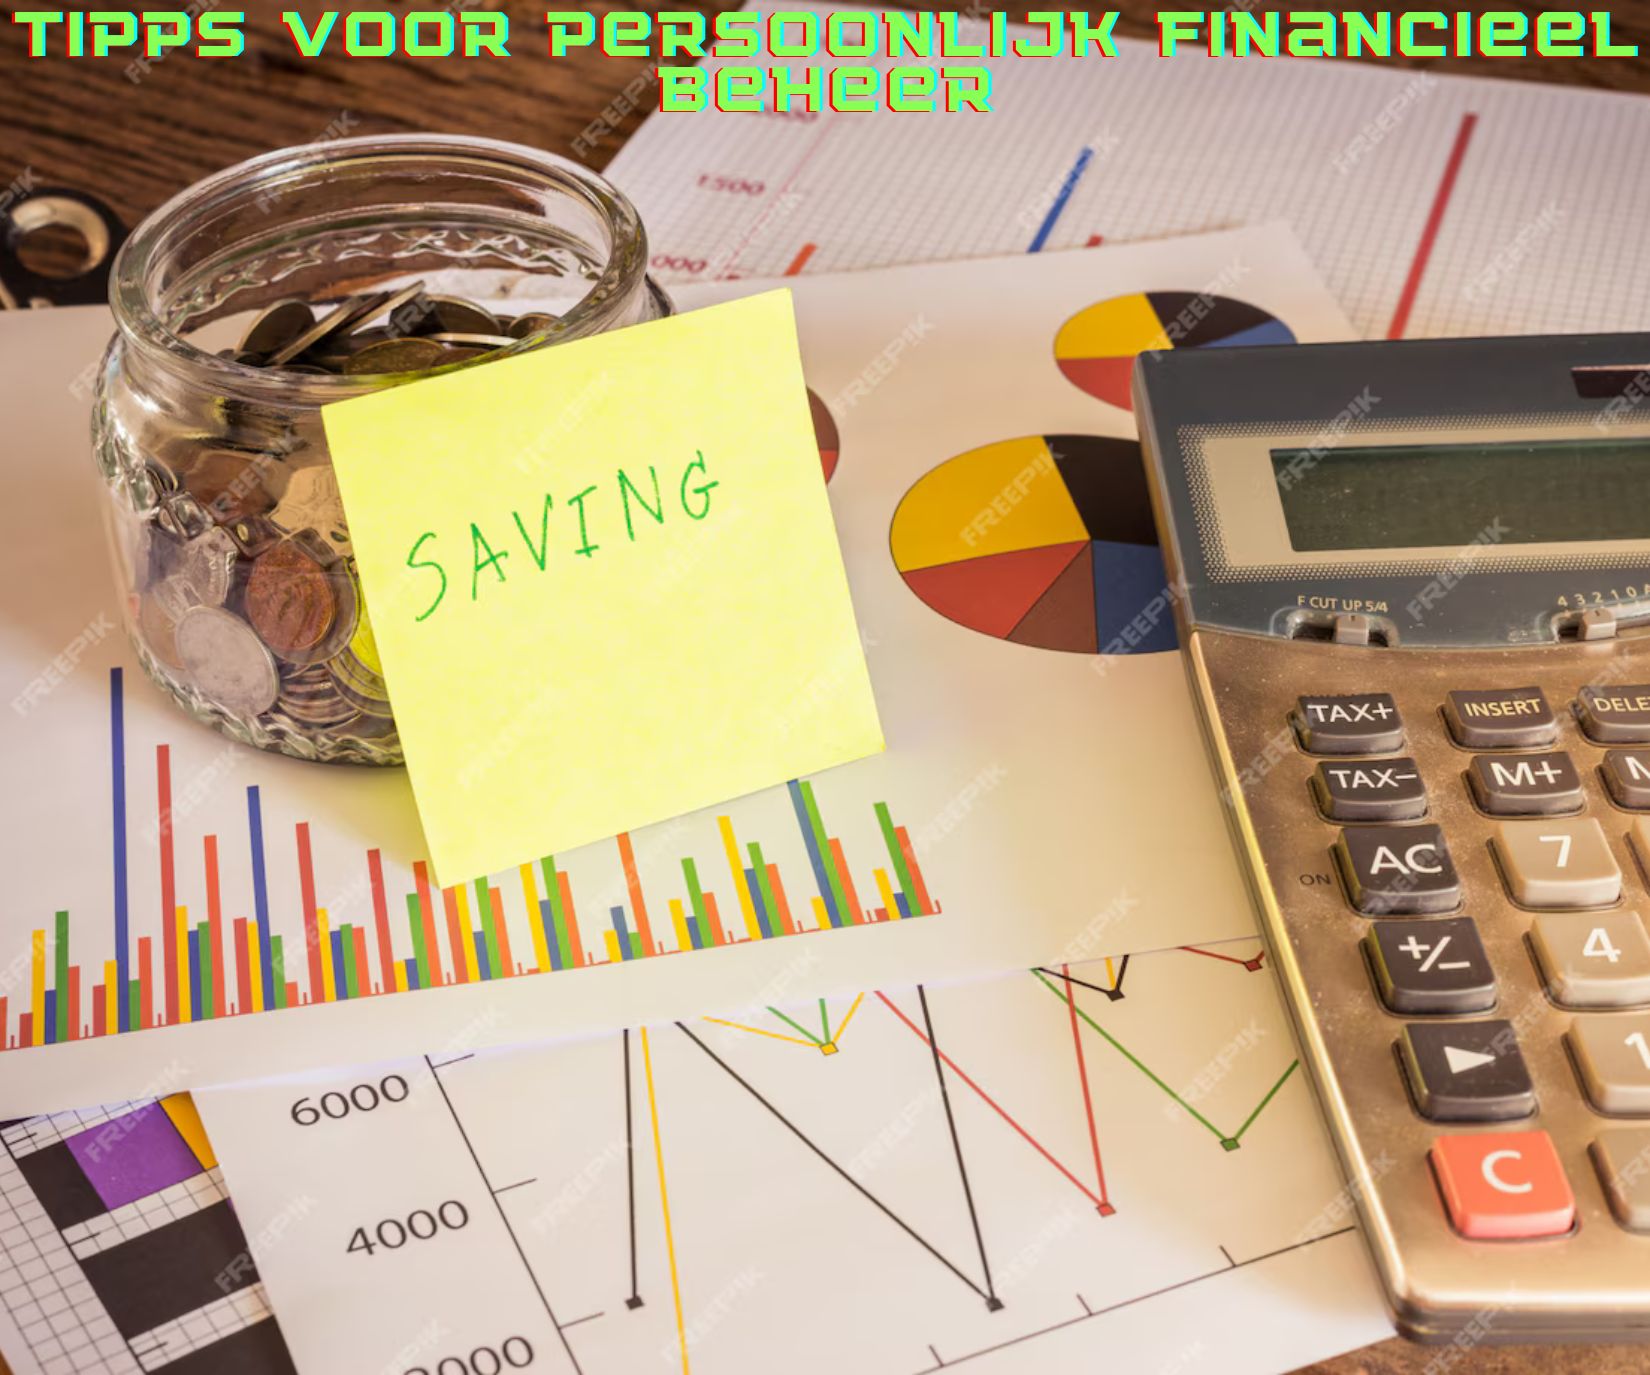 Tipps voor persoonlijk financieel beheer – Meine Strategien